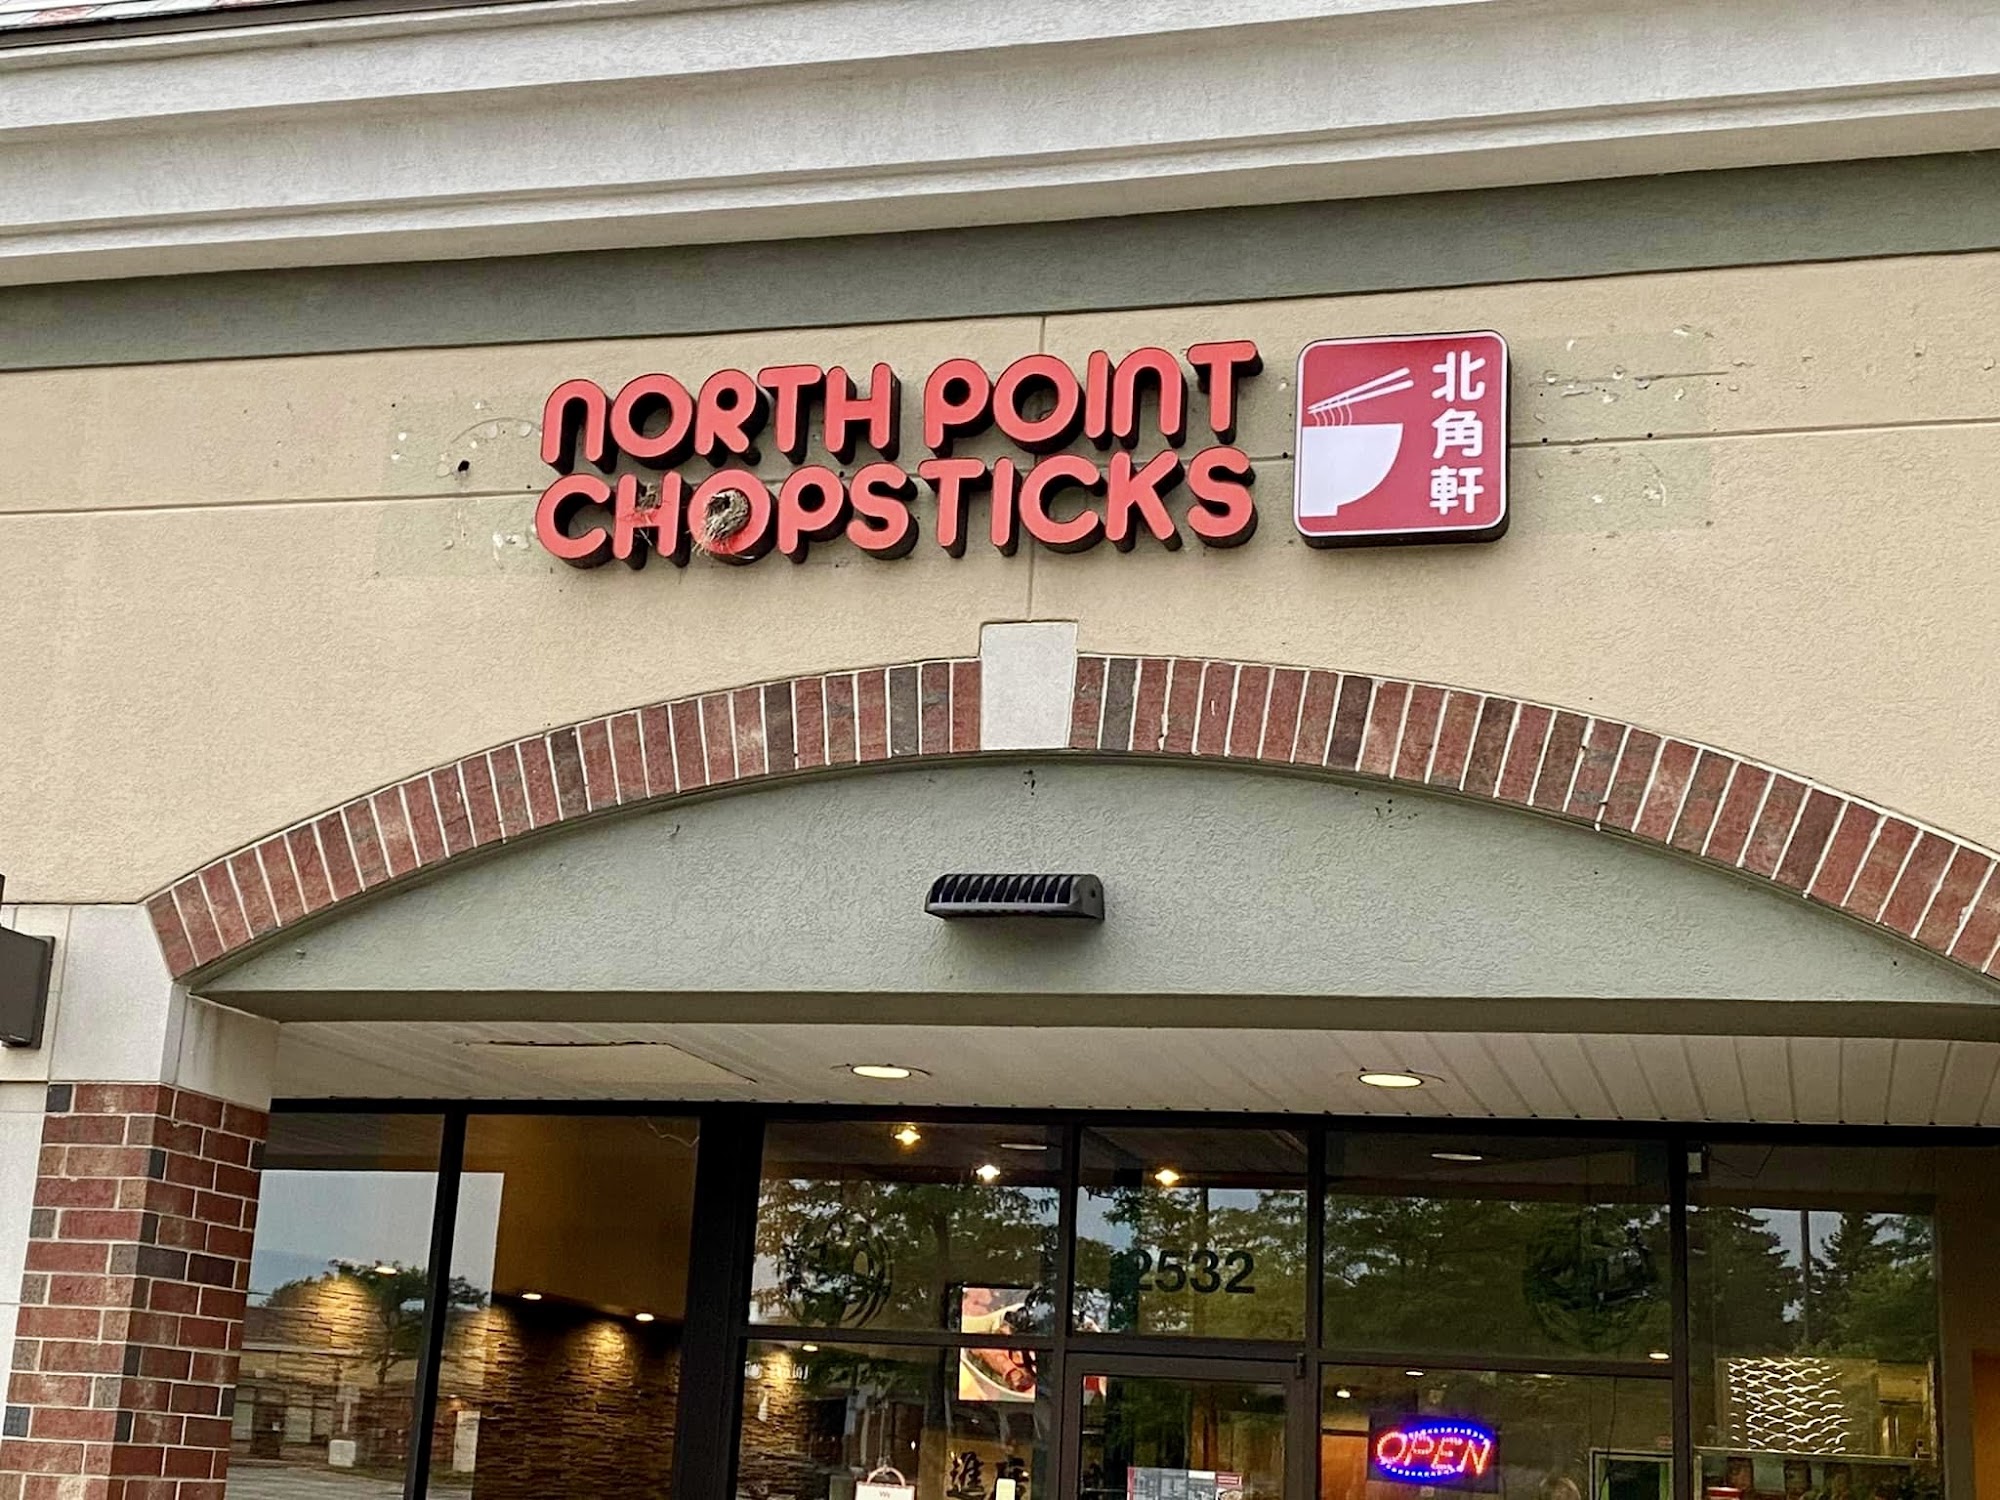 North Point Chopsticks